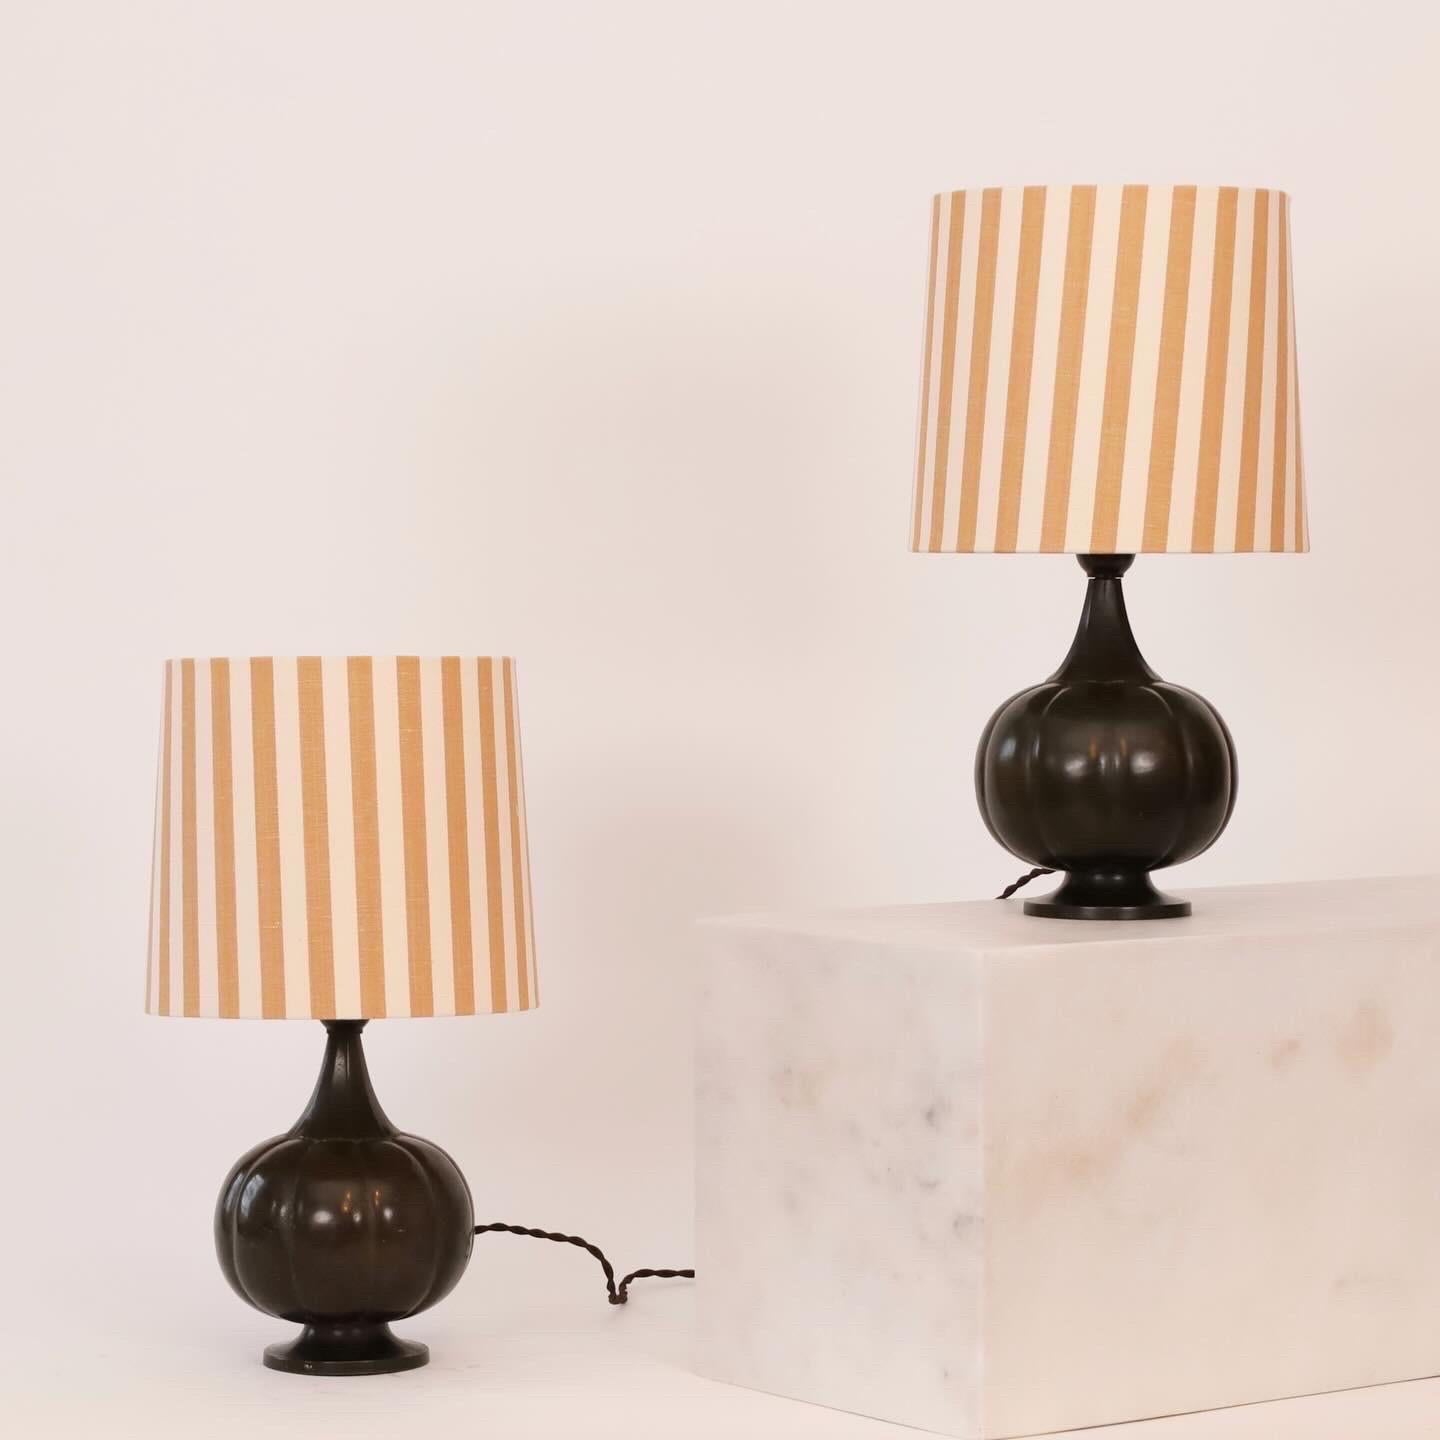 Ensemble de lampes de table en forme de citrouille des années 1920 par Just Andersen accomplies avec de nouveaux abat-jours en textile artisanal de Mallorca. Un ensemble rare pour une belle maison.   
 
* Lot de lampes de bureau en métal avec une